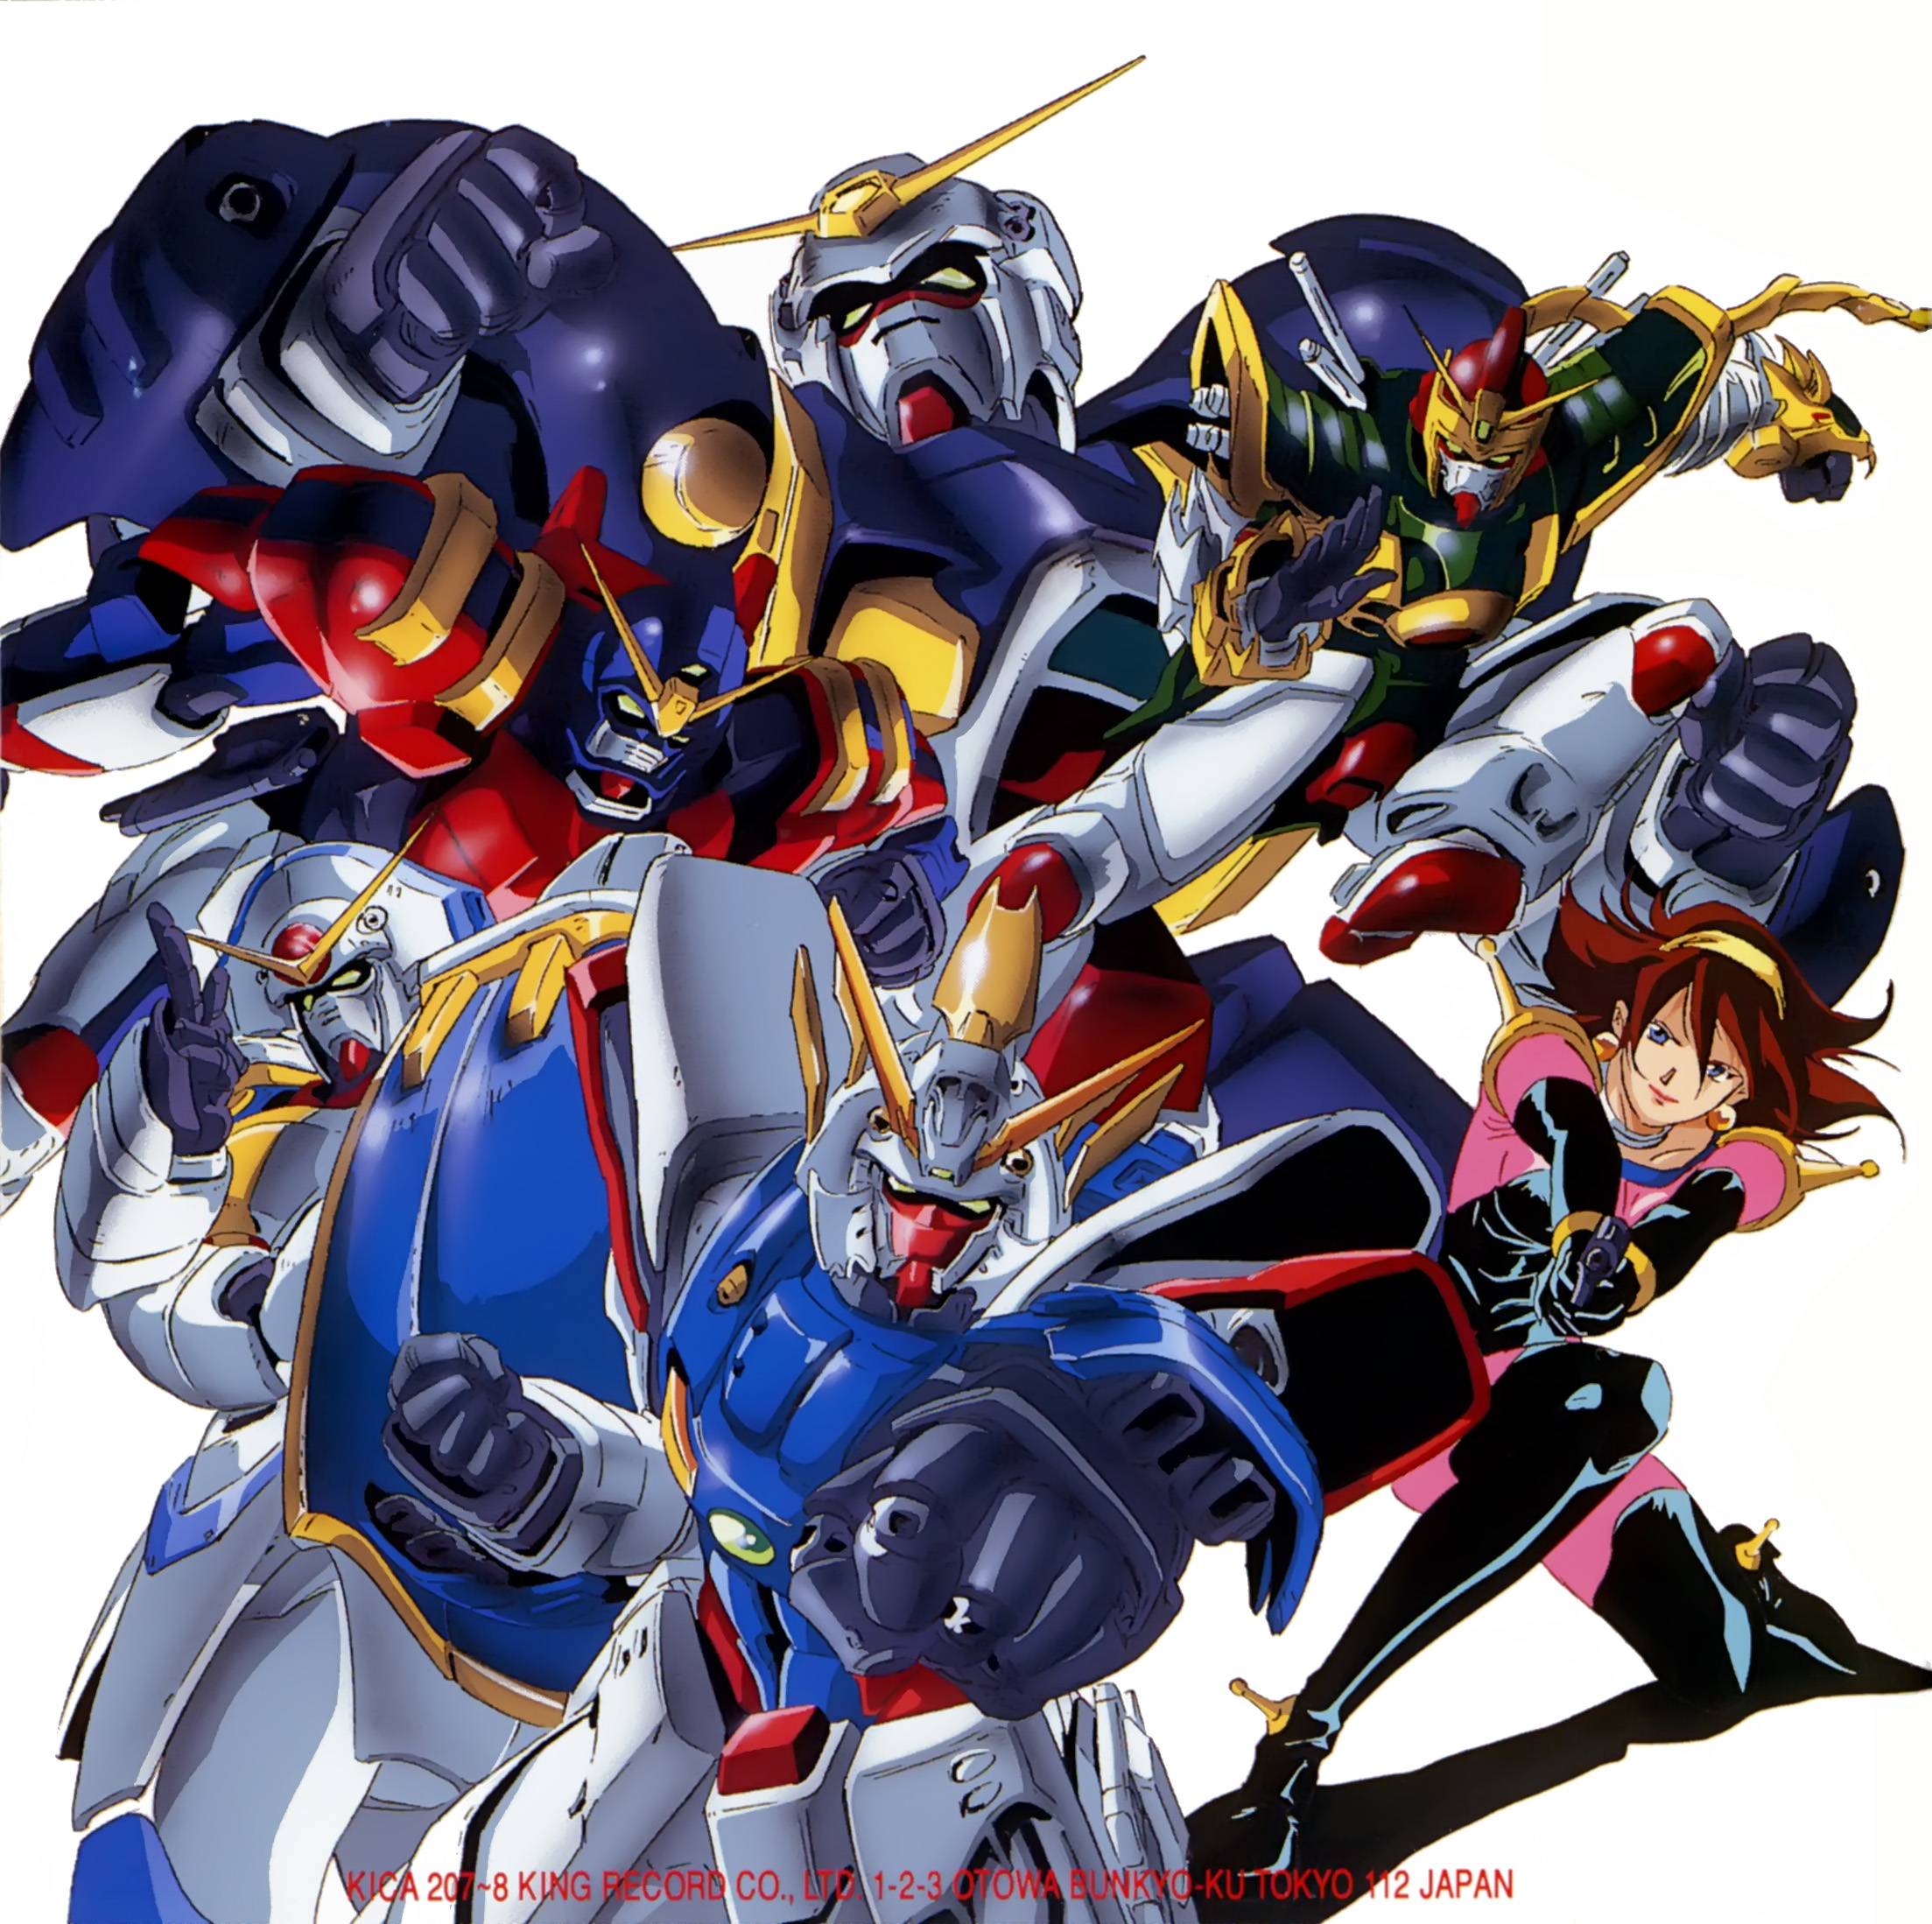 image For > Mobile Fighter G Gundam